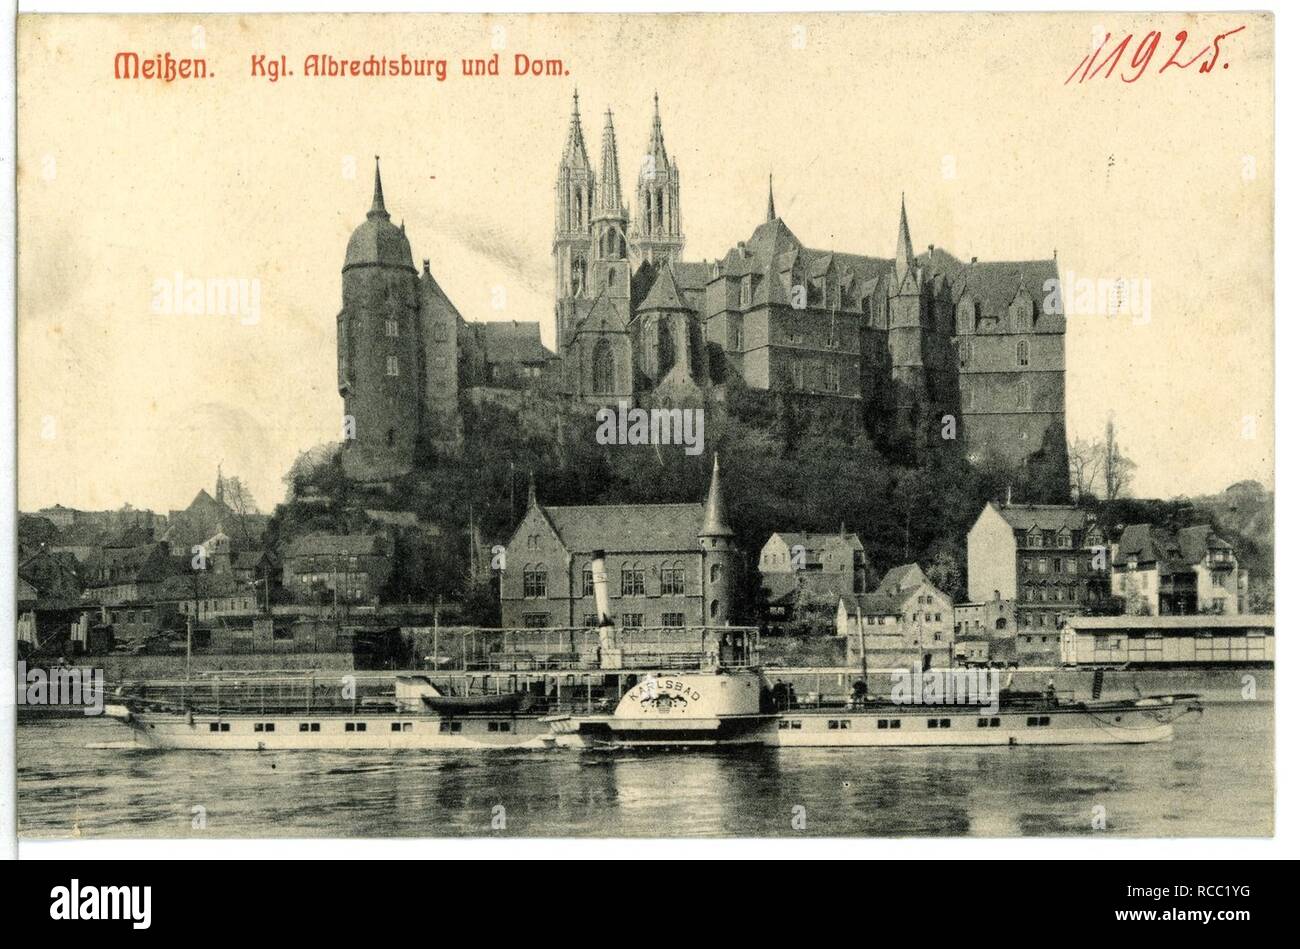 11925 - Meißen - Albrechtsburg und Dom-1910-Elbe mit Dampfer Karlsbad - Stockfoto